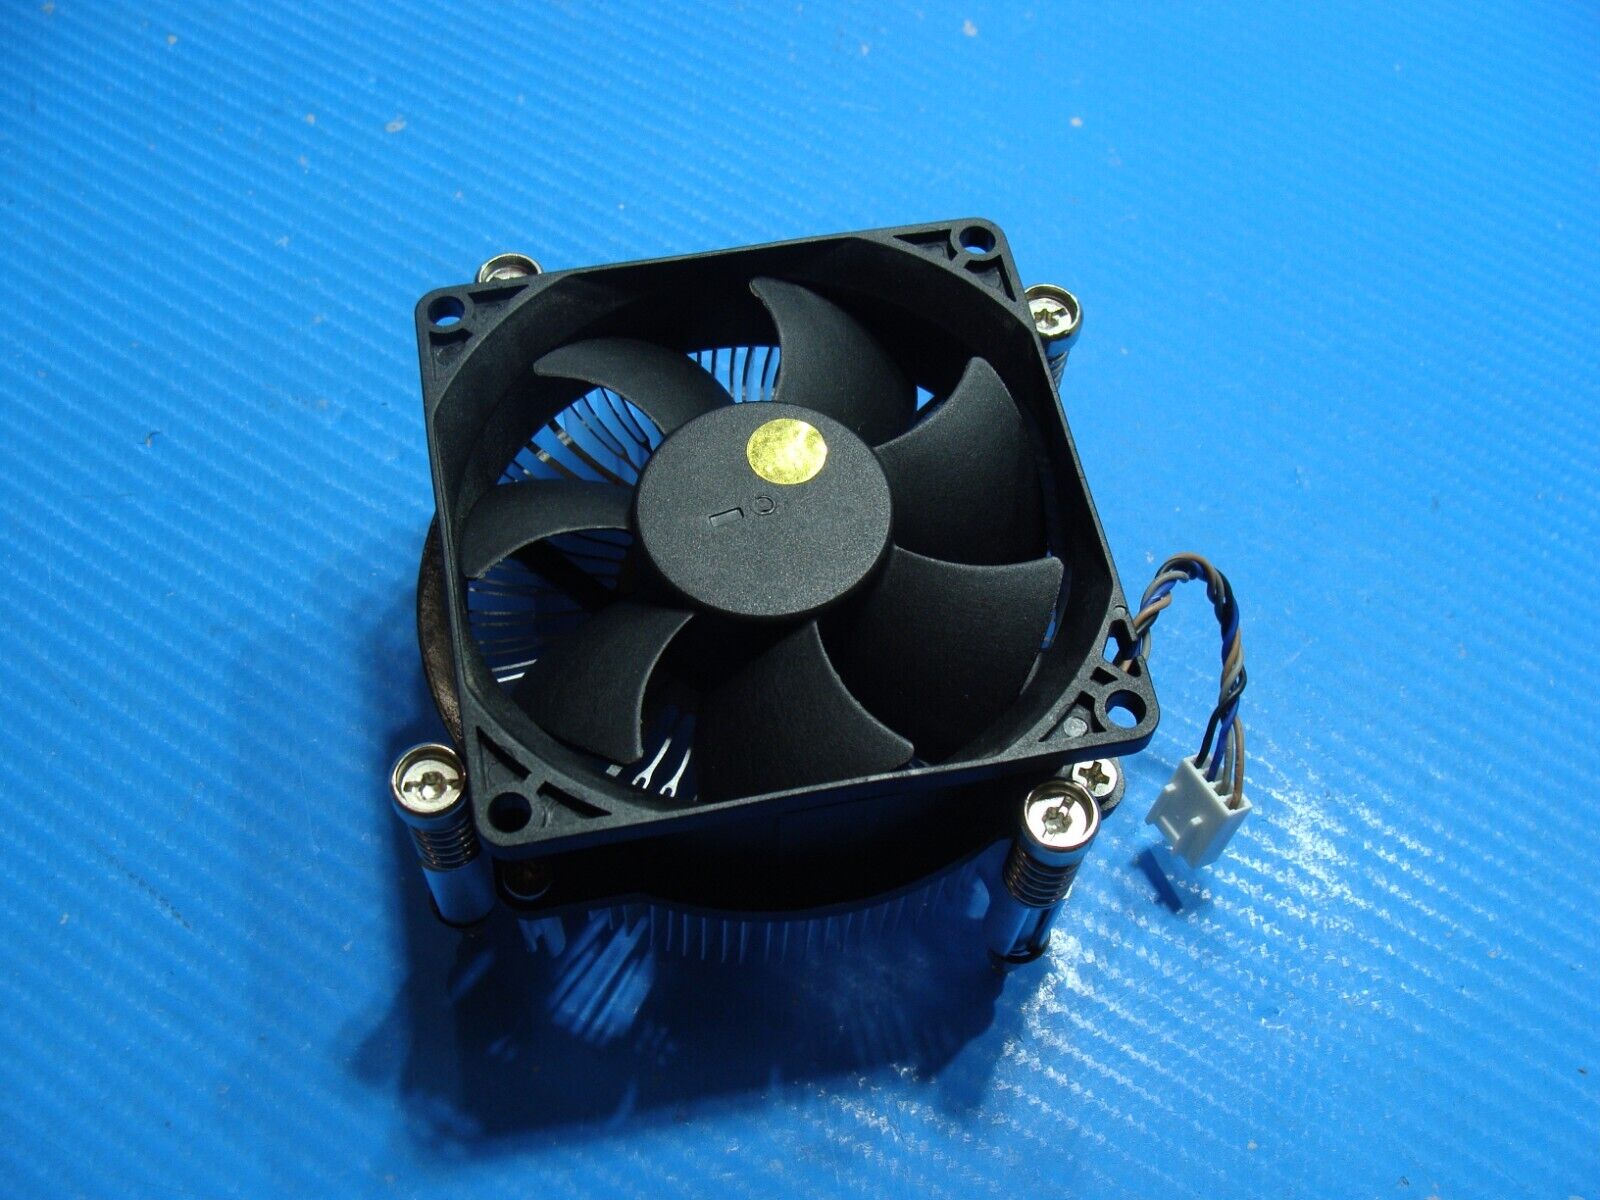 HP ProDesk 600 G4 SFF Genuine Desktop CPU Cooling Fan w/Heatsink 908998-001